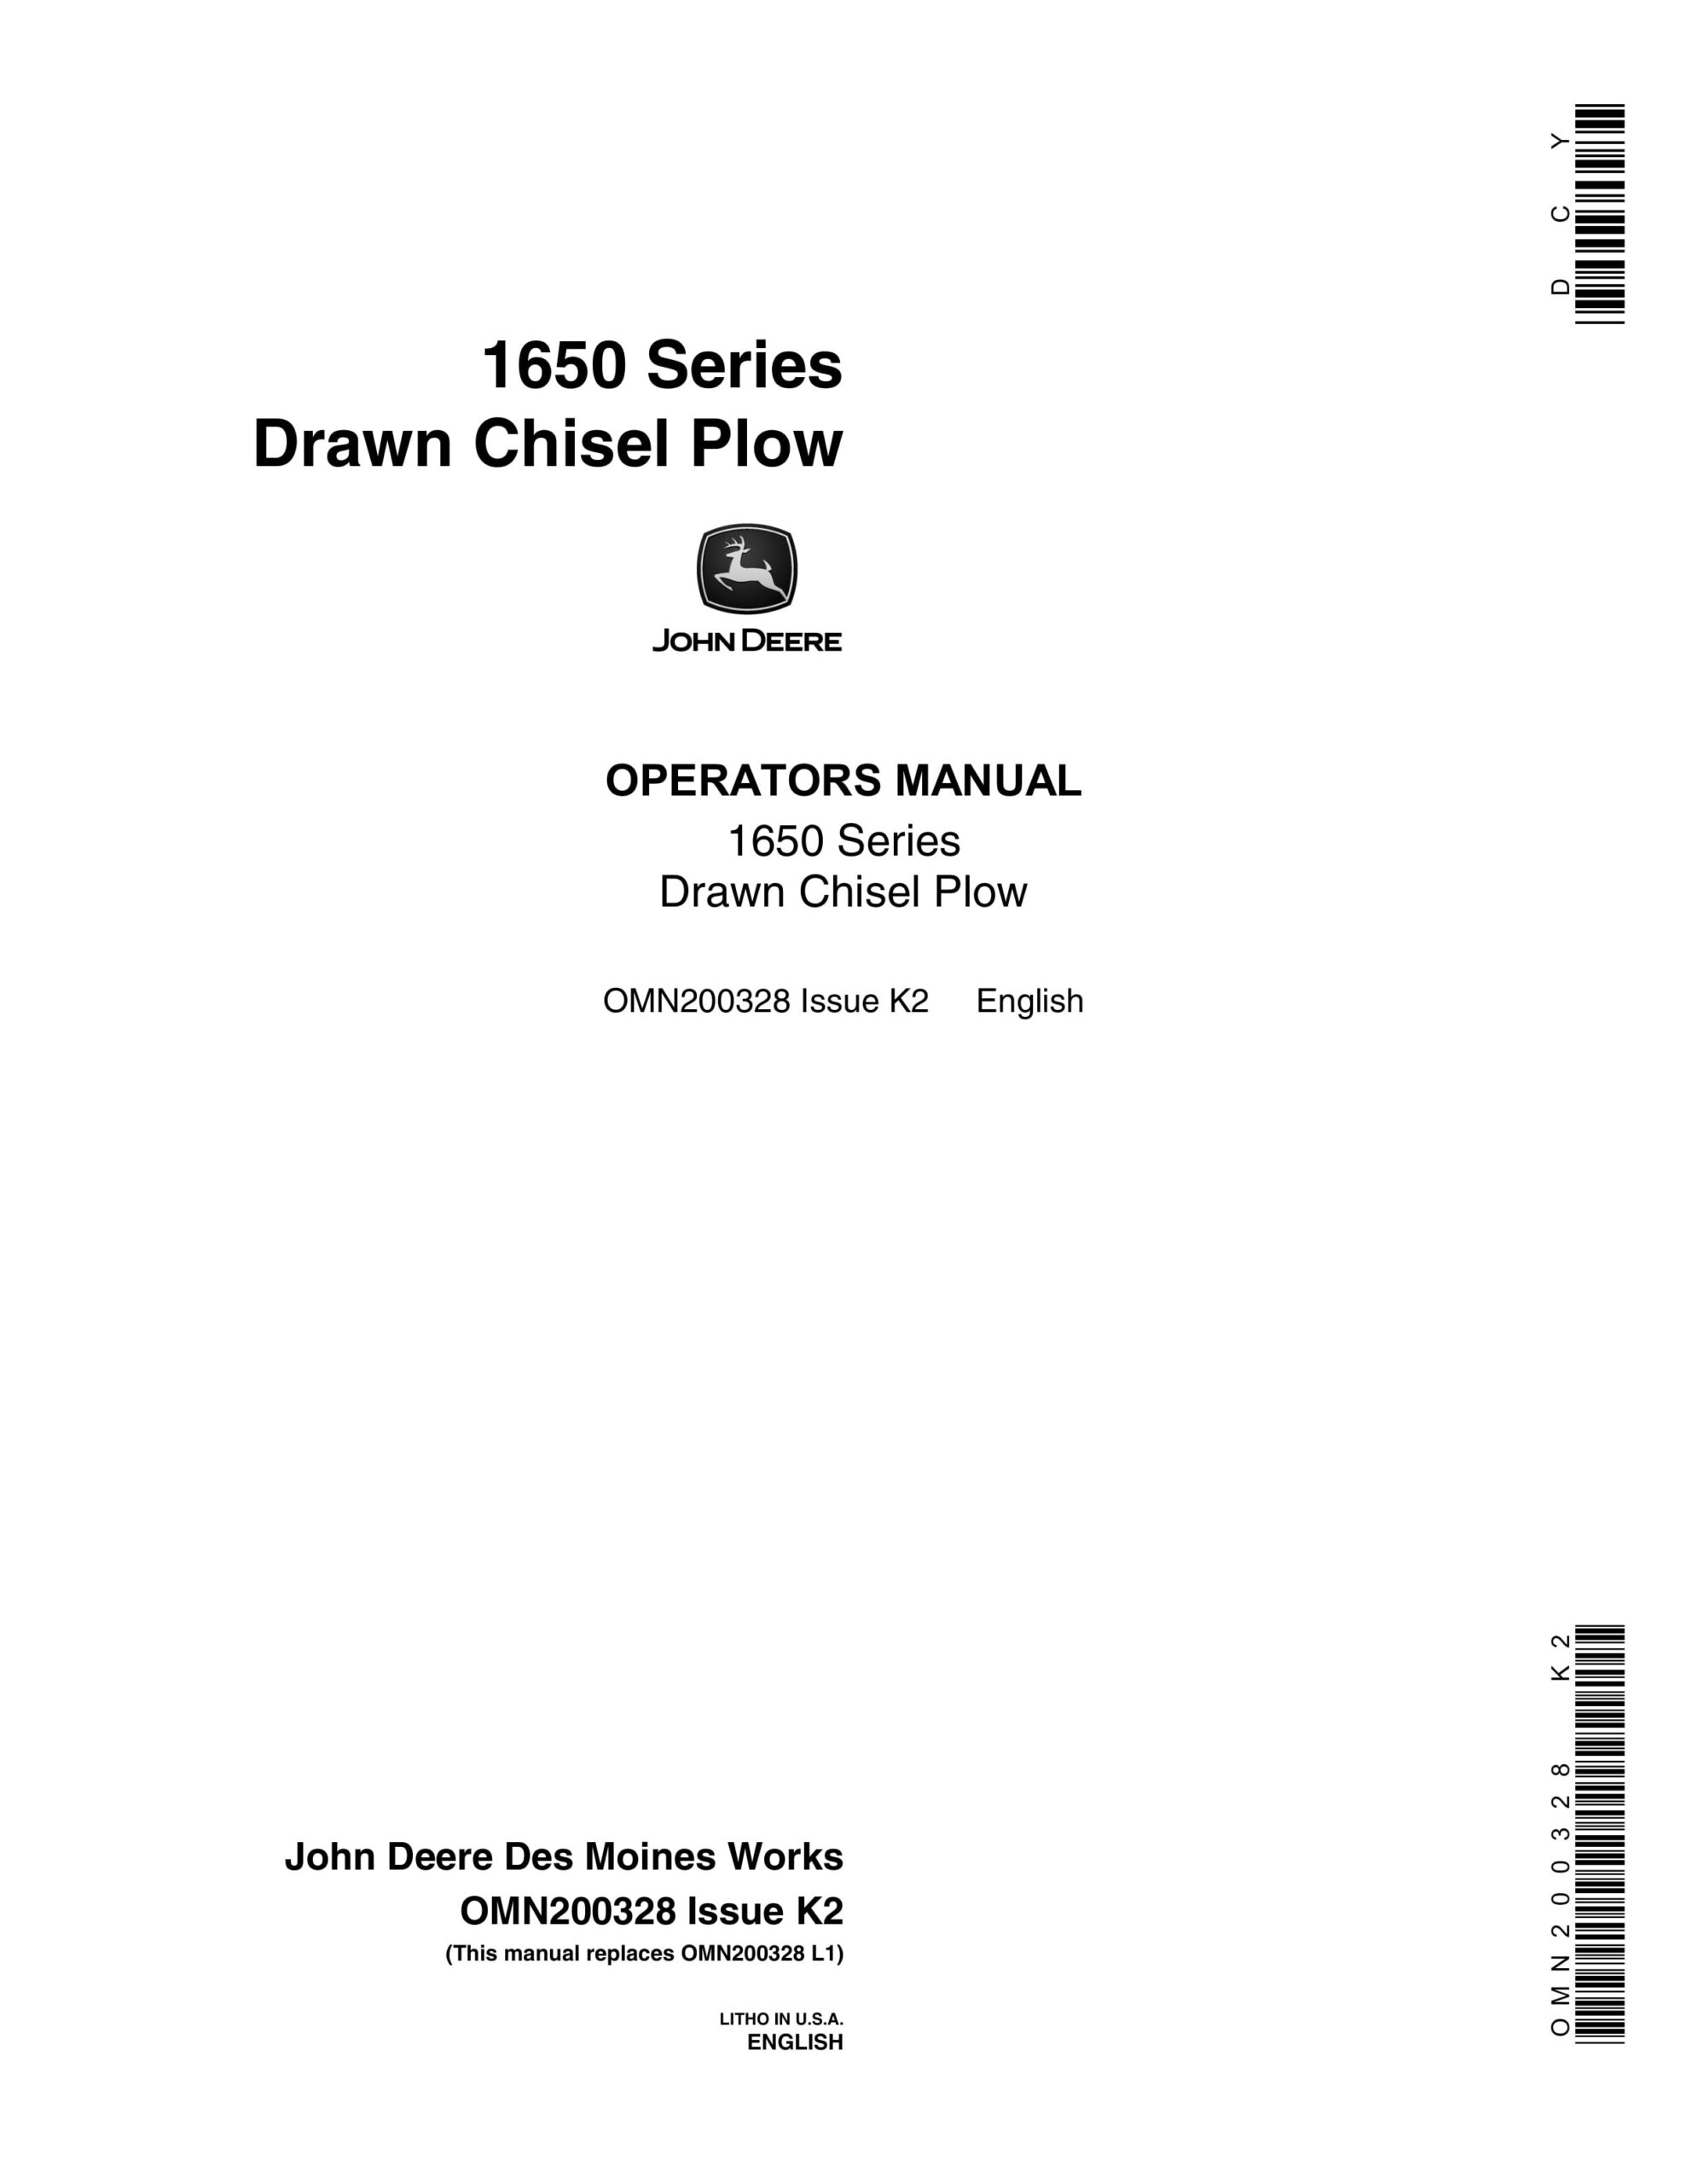 John Deere 1650 Series Drawn Chisel Plow Operator Manual OMN200328-1